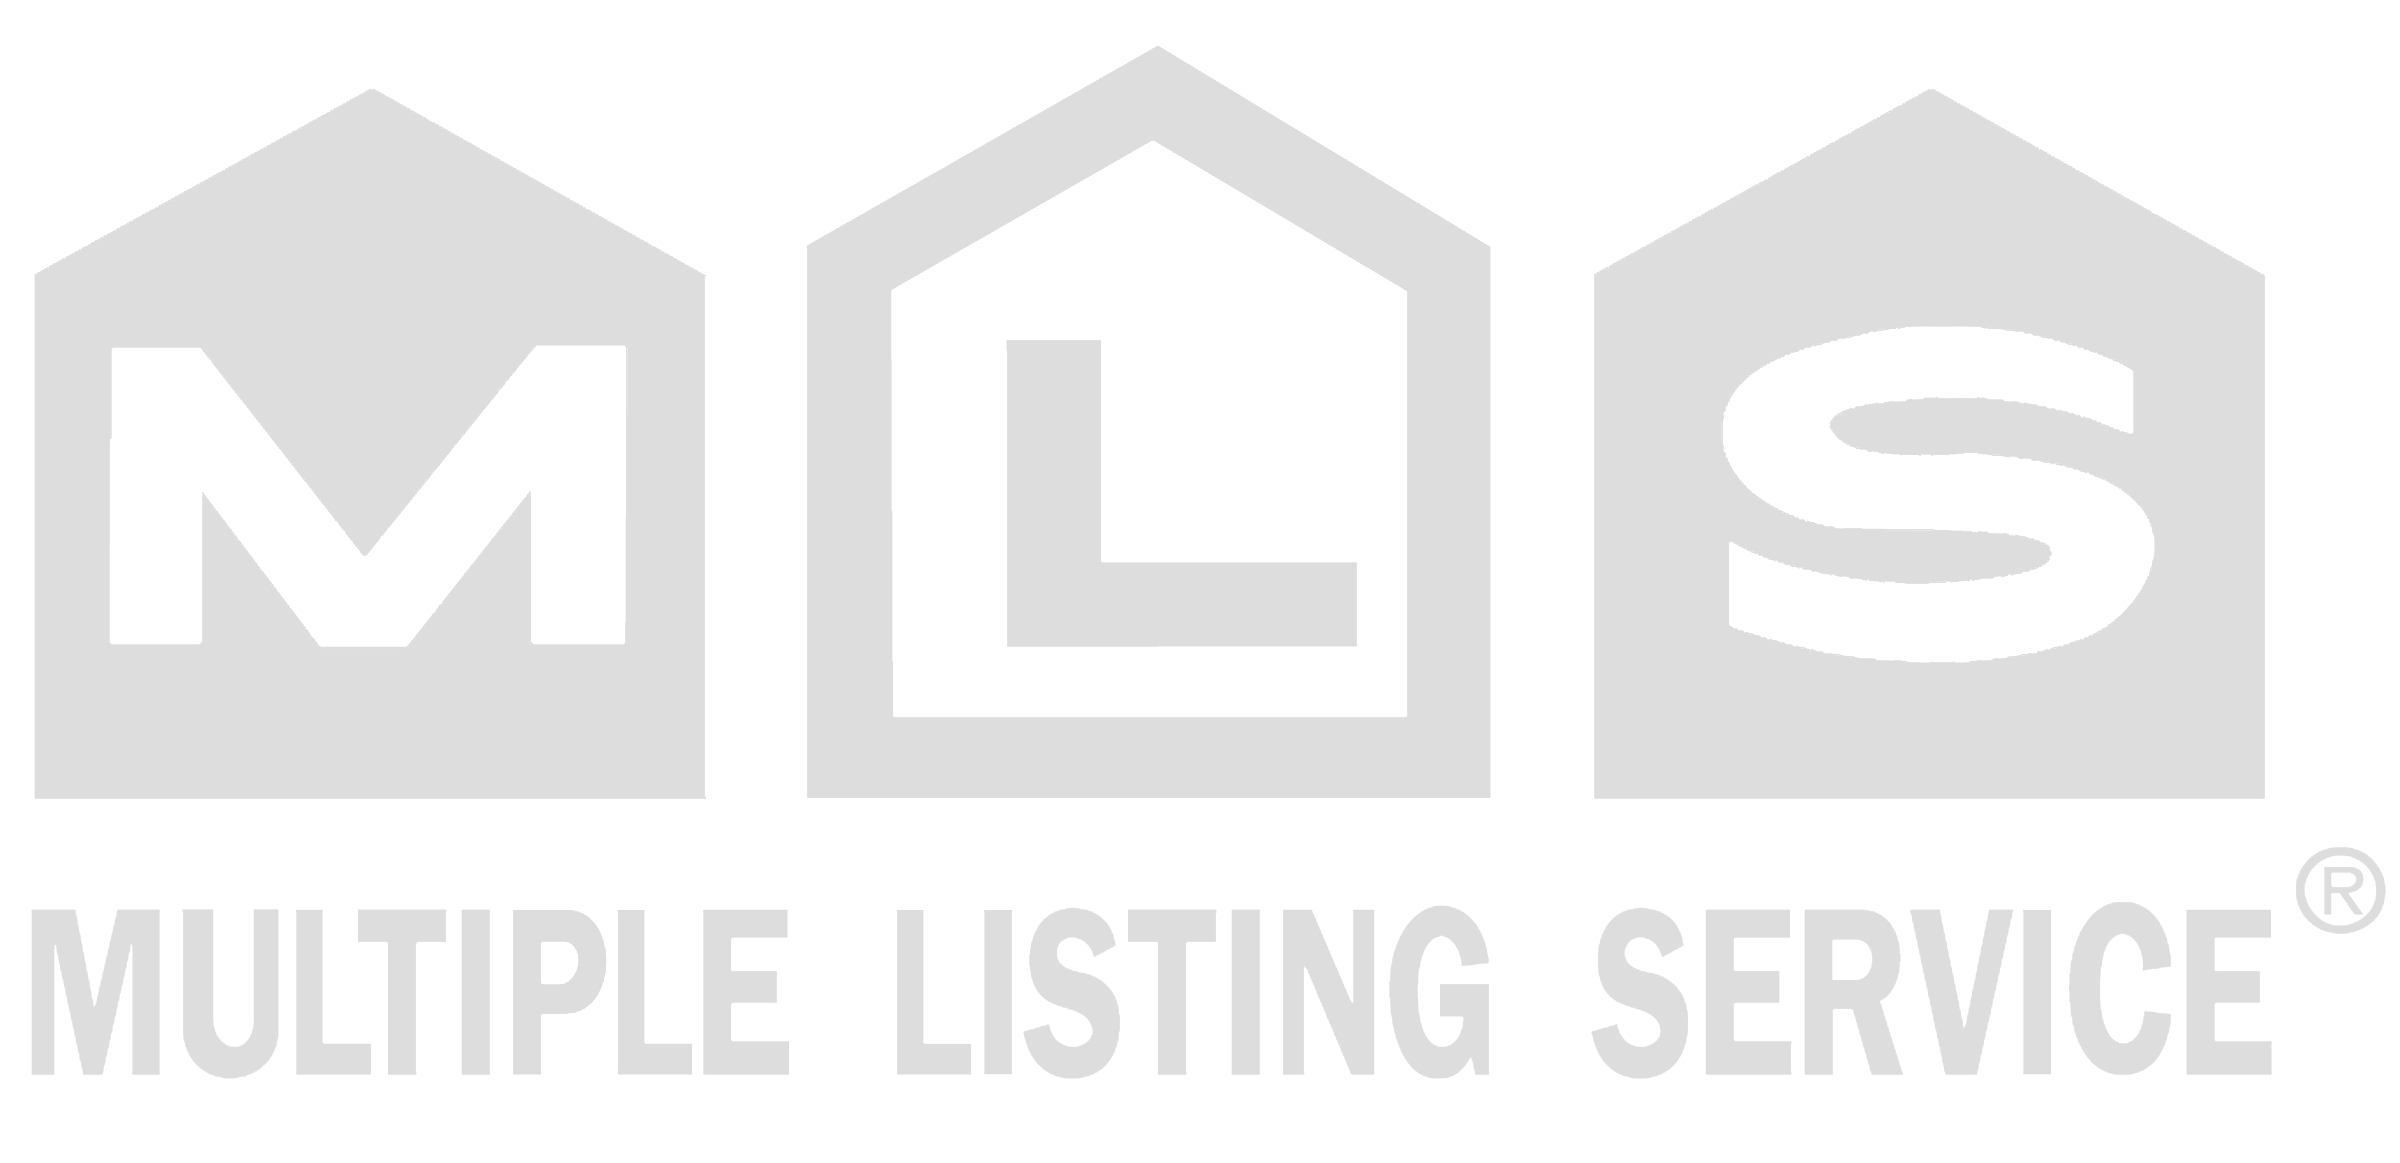 Real Estate MLS Logo - Realtor Mls Png Logo Transparent PNG Logos